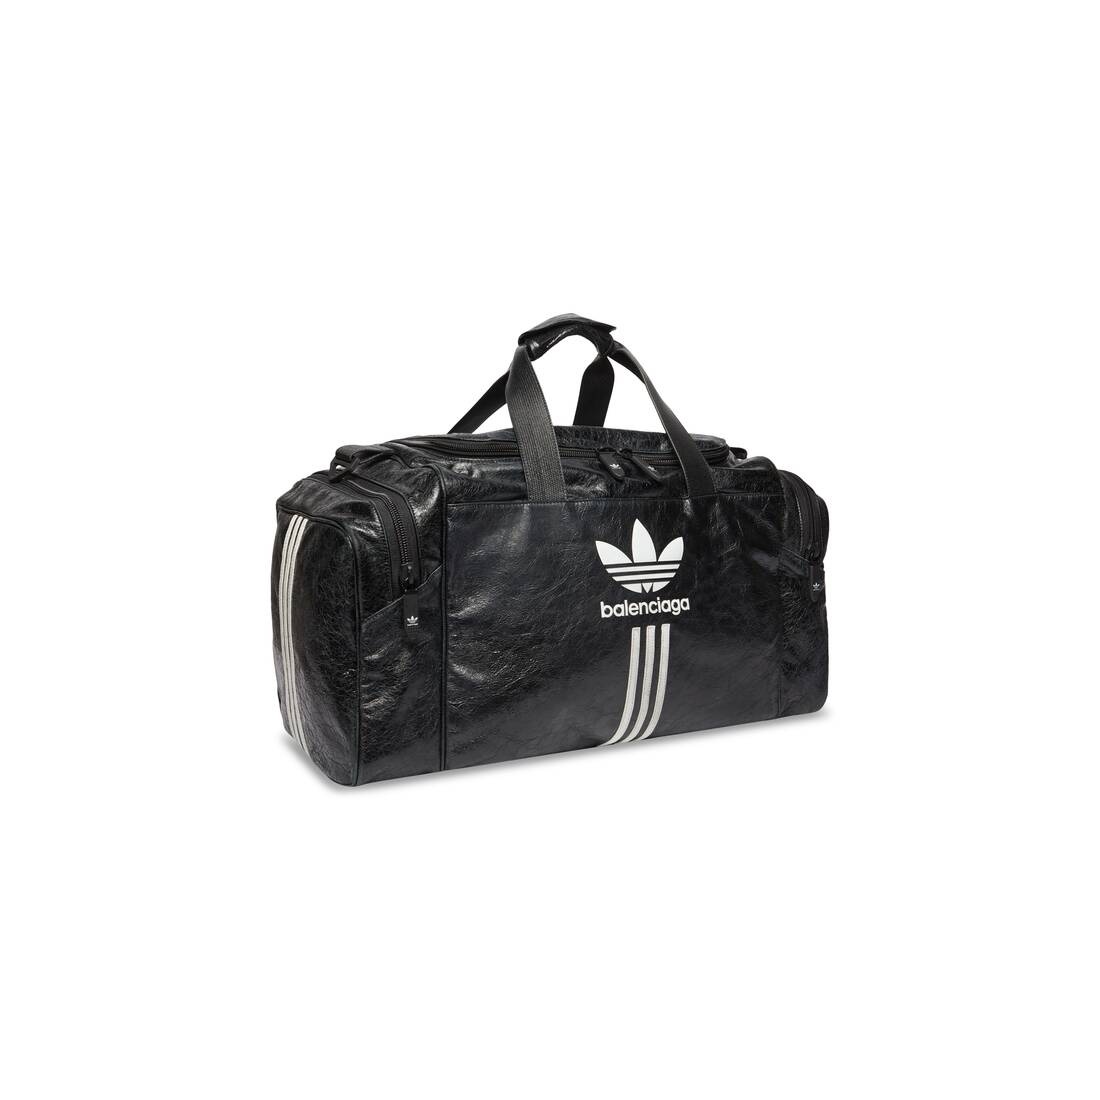 Men's Balenciaga / Adidas Gym Bag  in Black - 2